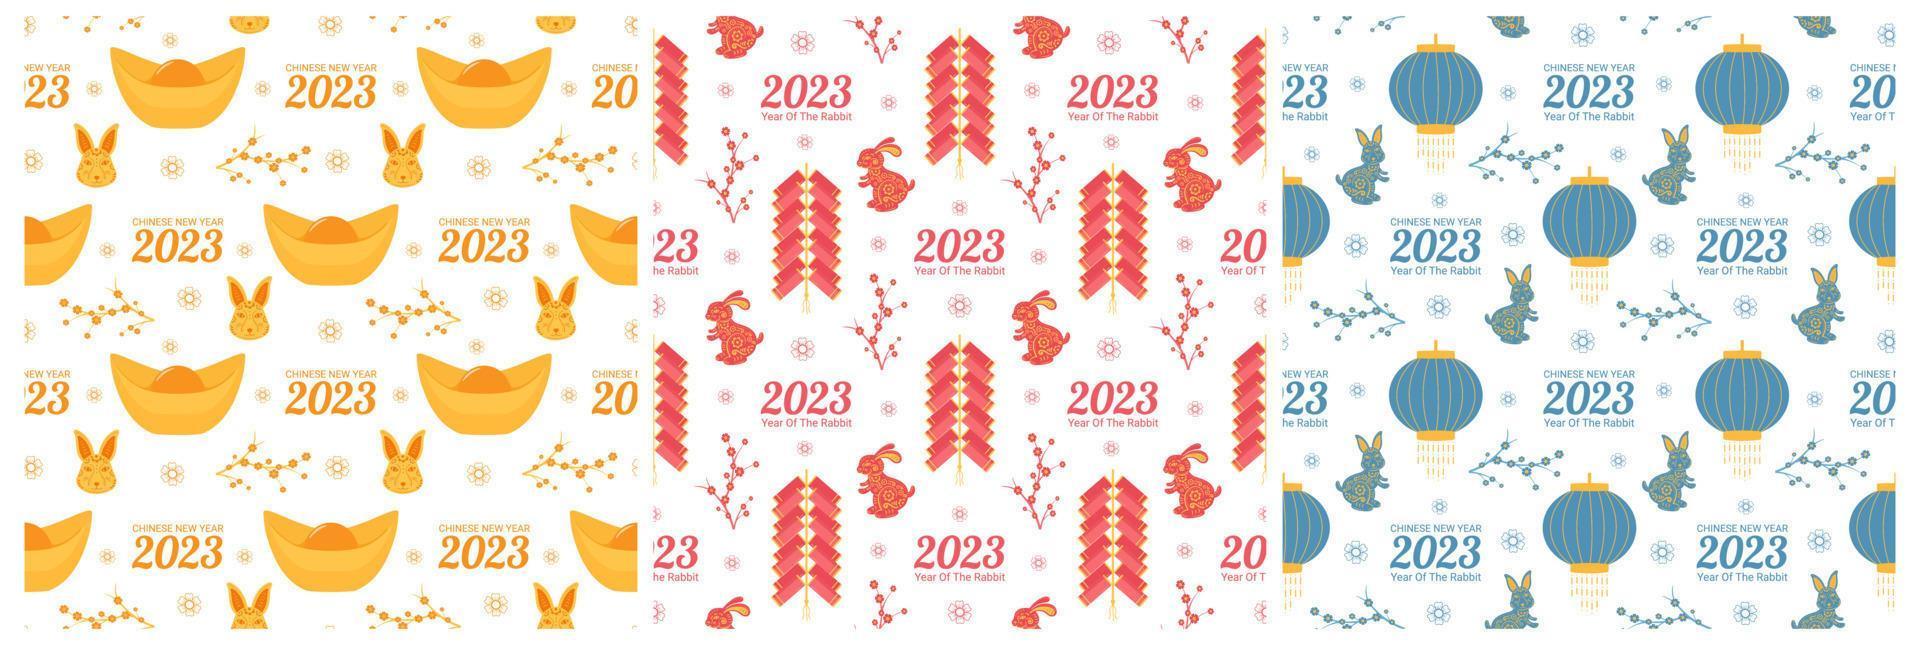 satz der chinesischen neuen mondjahr 2023 tag nahtlose muster dekoration vorlage handgezeichnete cartoon flache illustration vektor